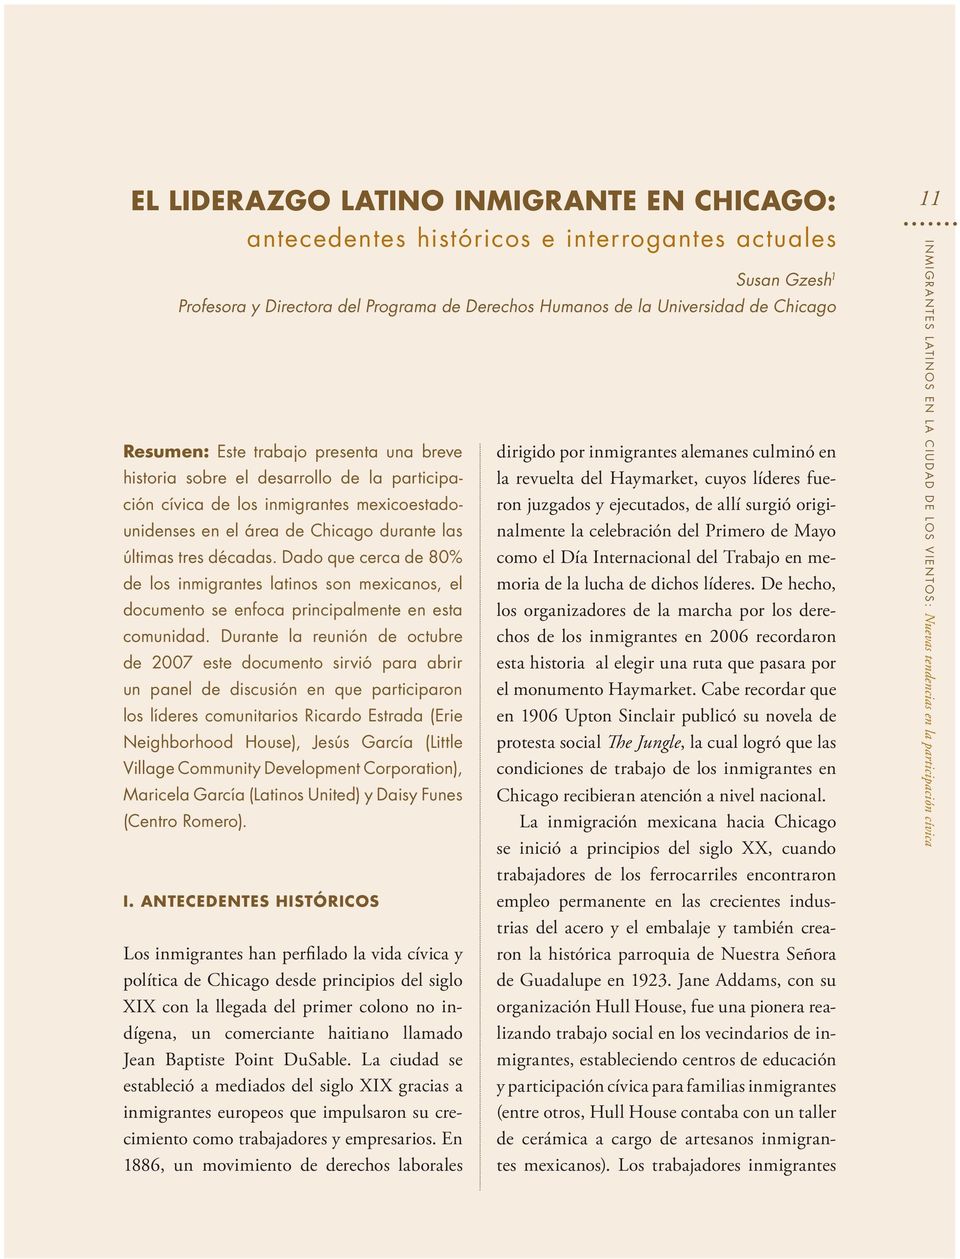 Dado que cerca de 80% de los inmigrantes latinos son mexicanos, el documento se enfoca principalmente en esta comunidad.